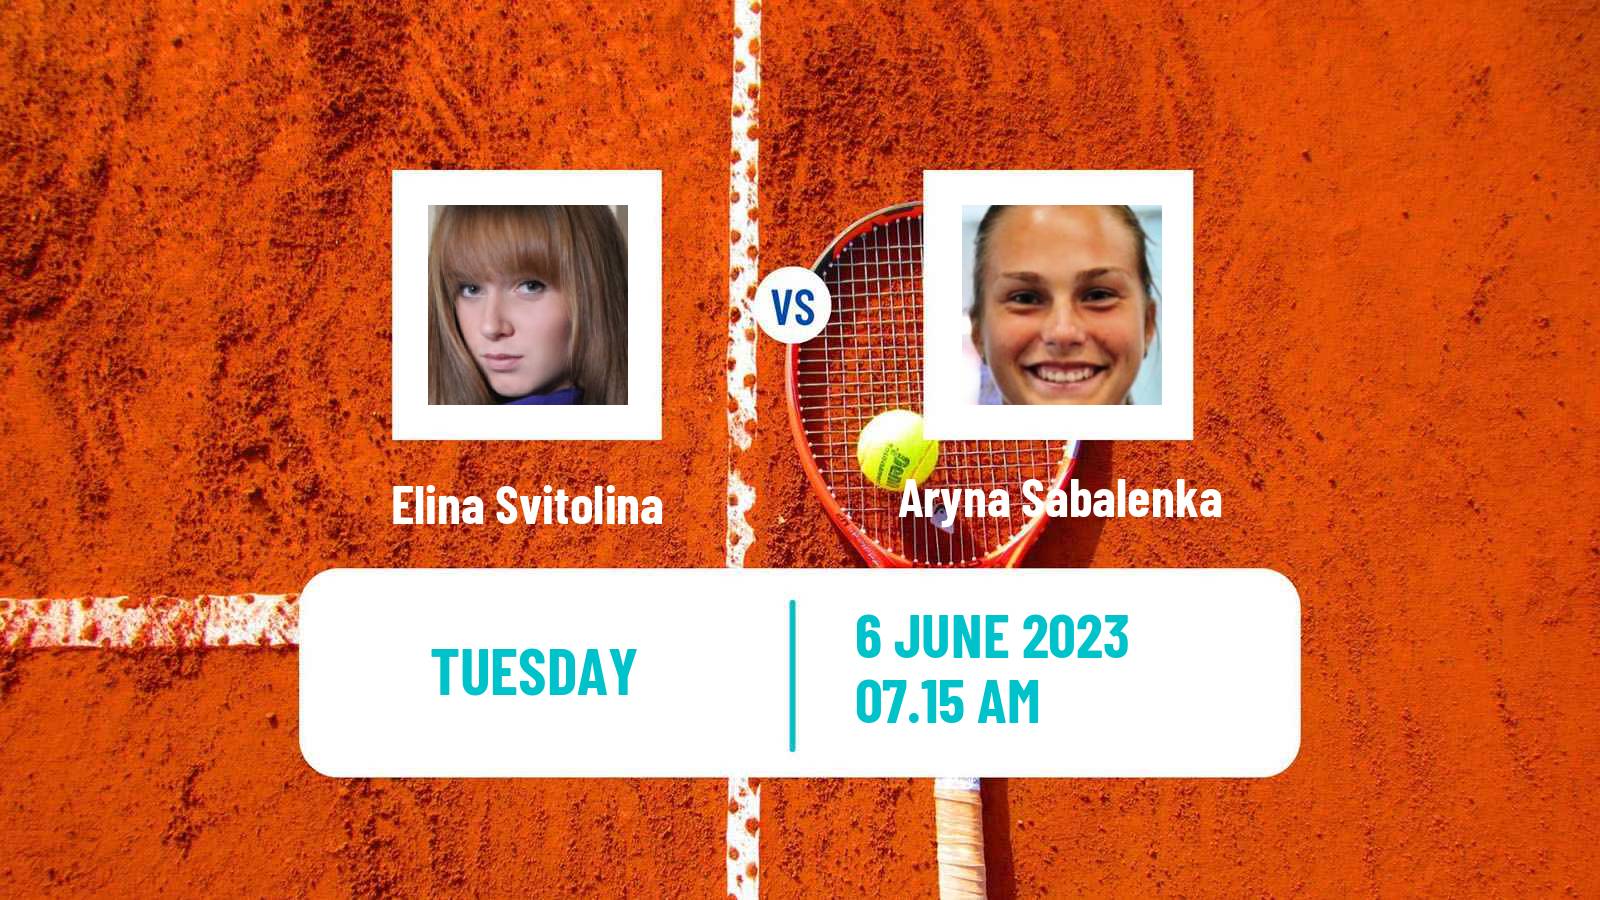 Tennis WTA Roland Garros Elina Svitolina - Aryna Sabalenka